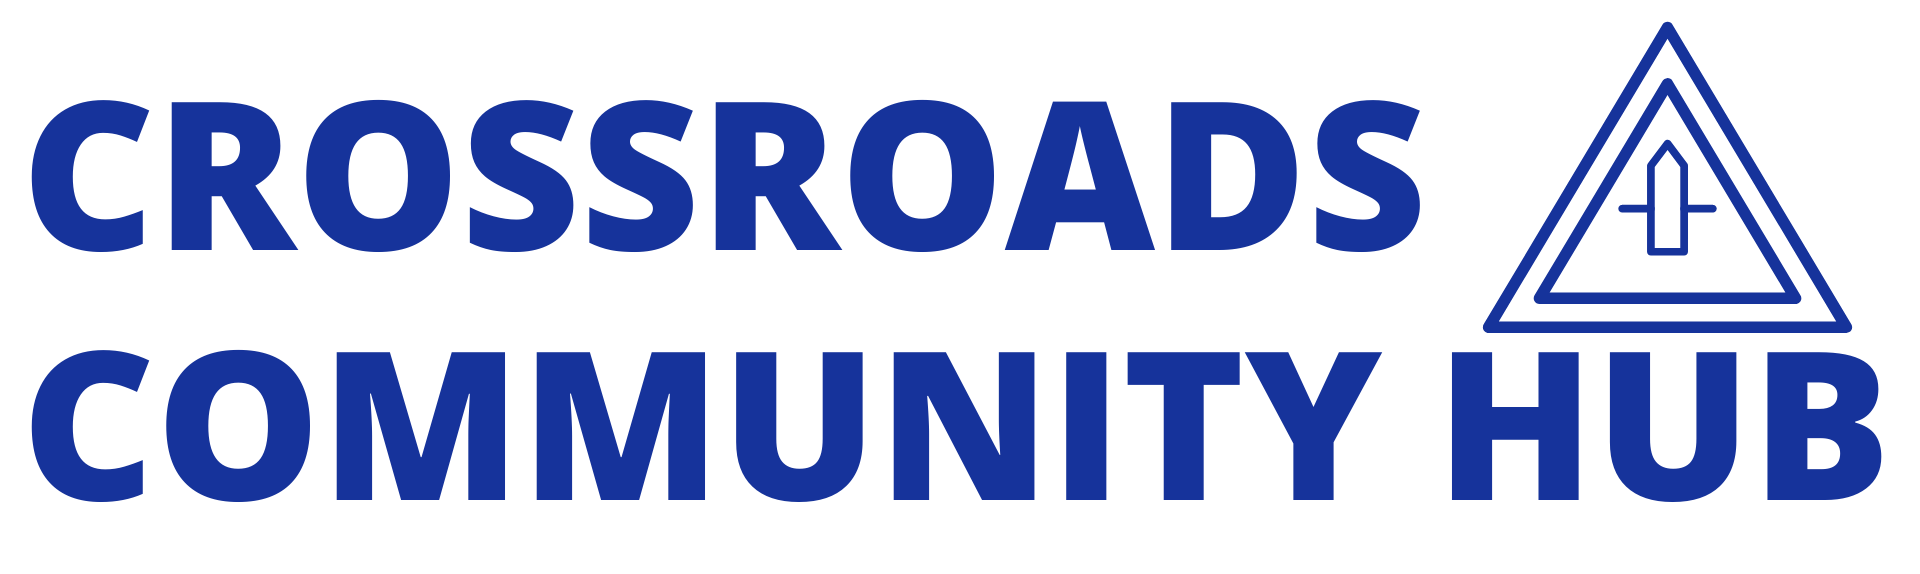 Crossroads Community Hub